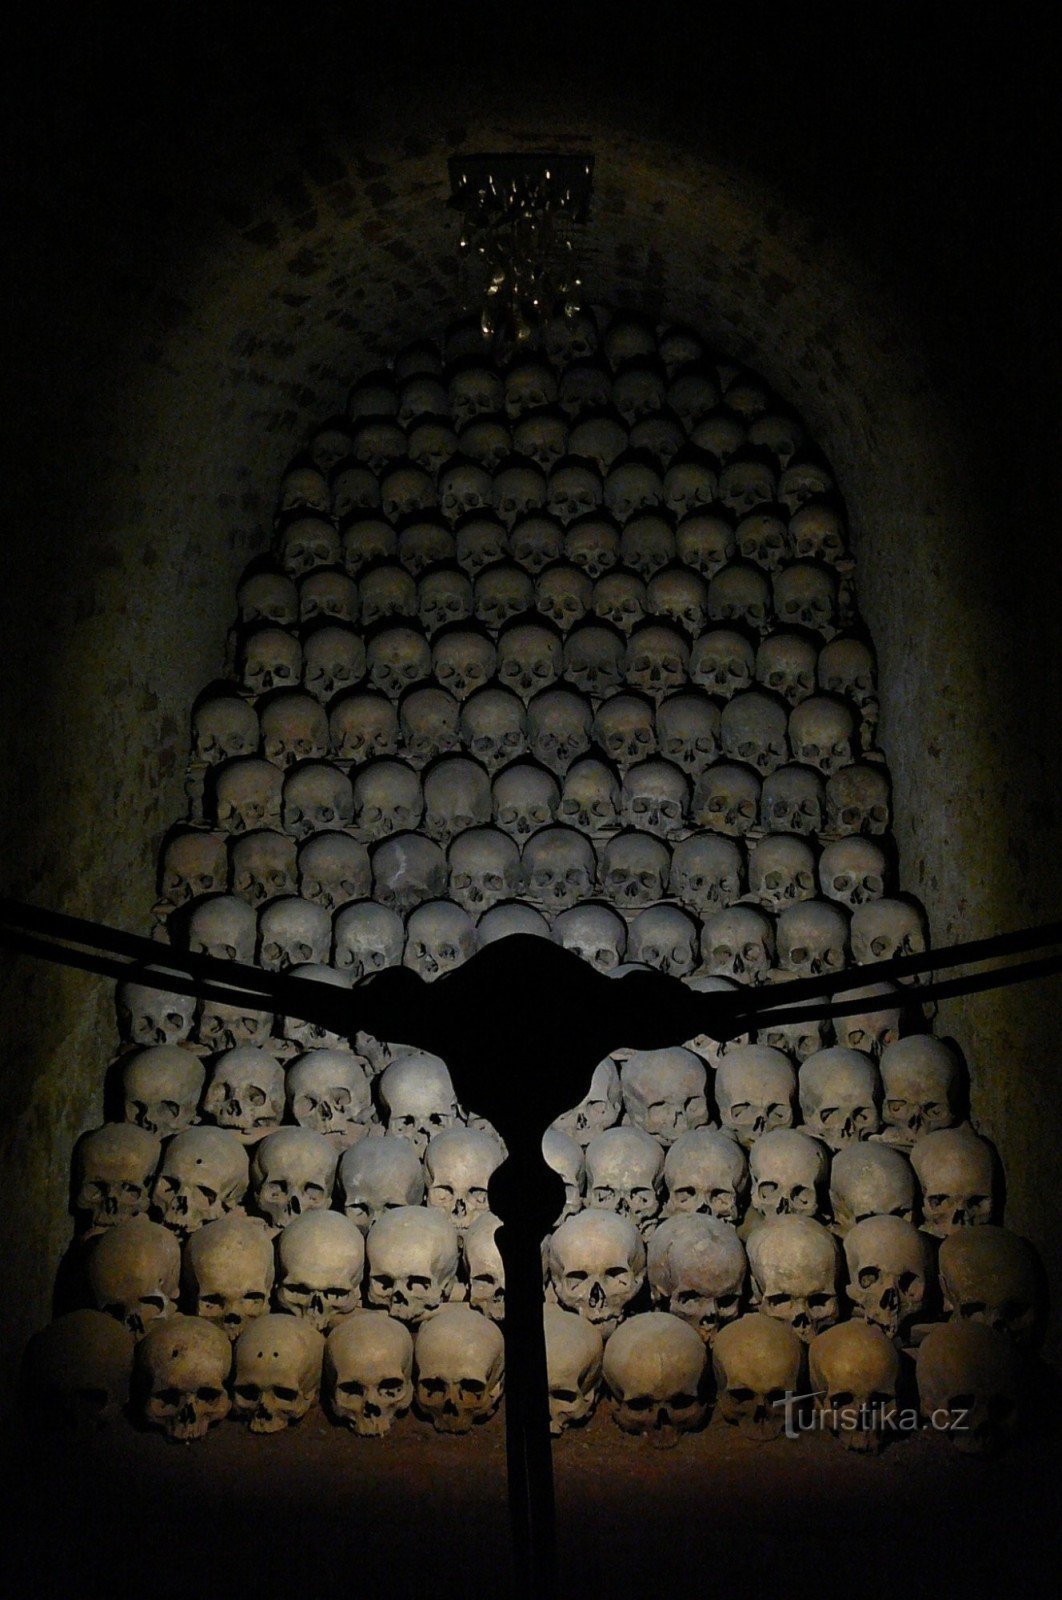 Phần ấn tượng nhất của thánh địa với tác phẩm điêu khắc Tears của Jaromír Gargulák (gần trần nhà)